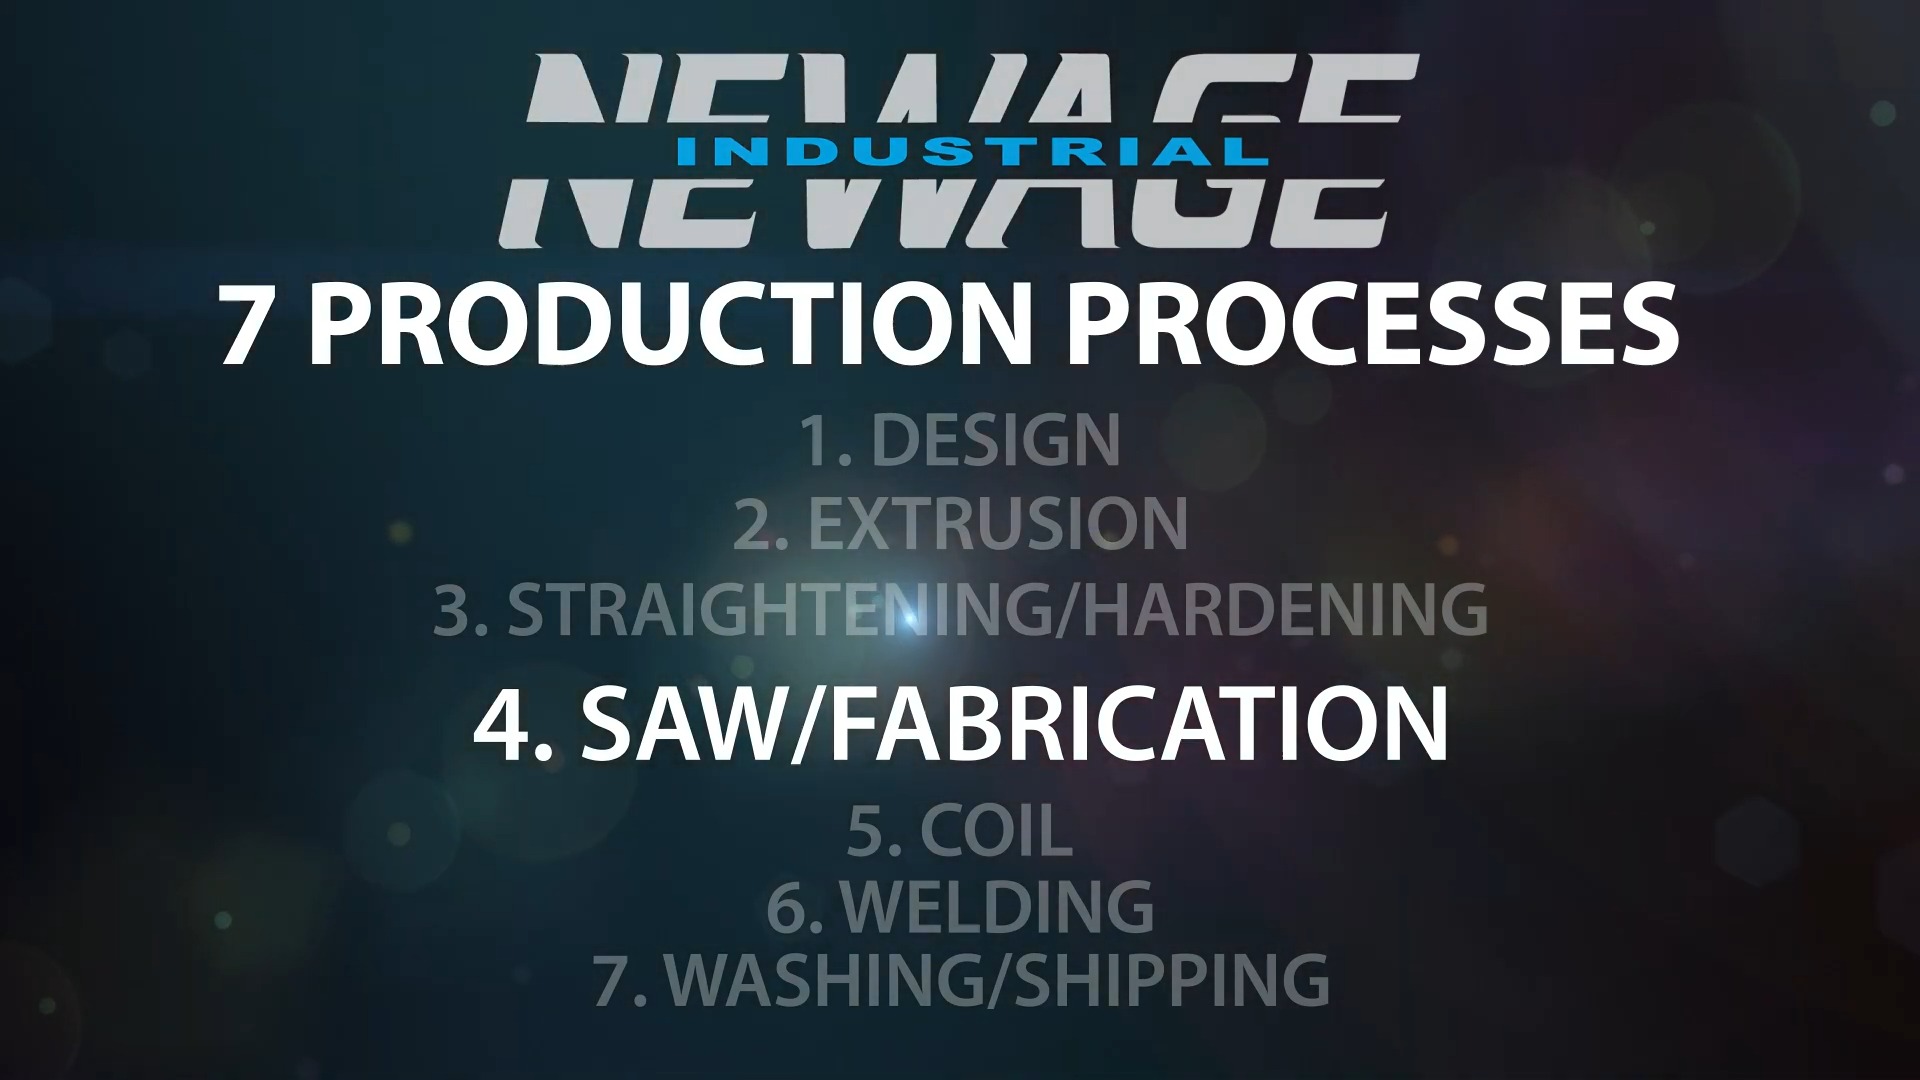 Process – Saw Fabrication